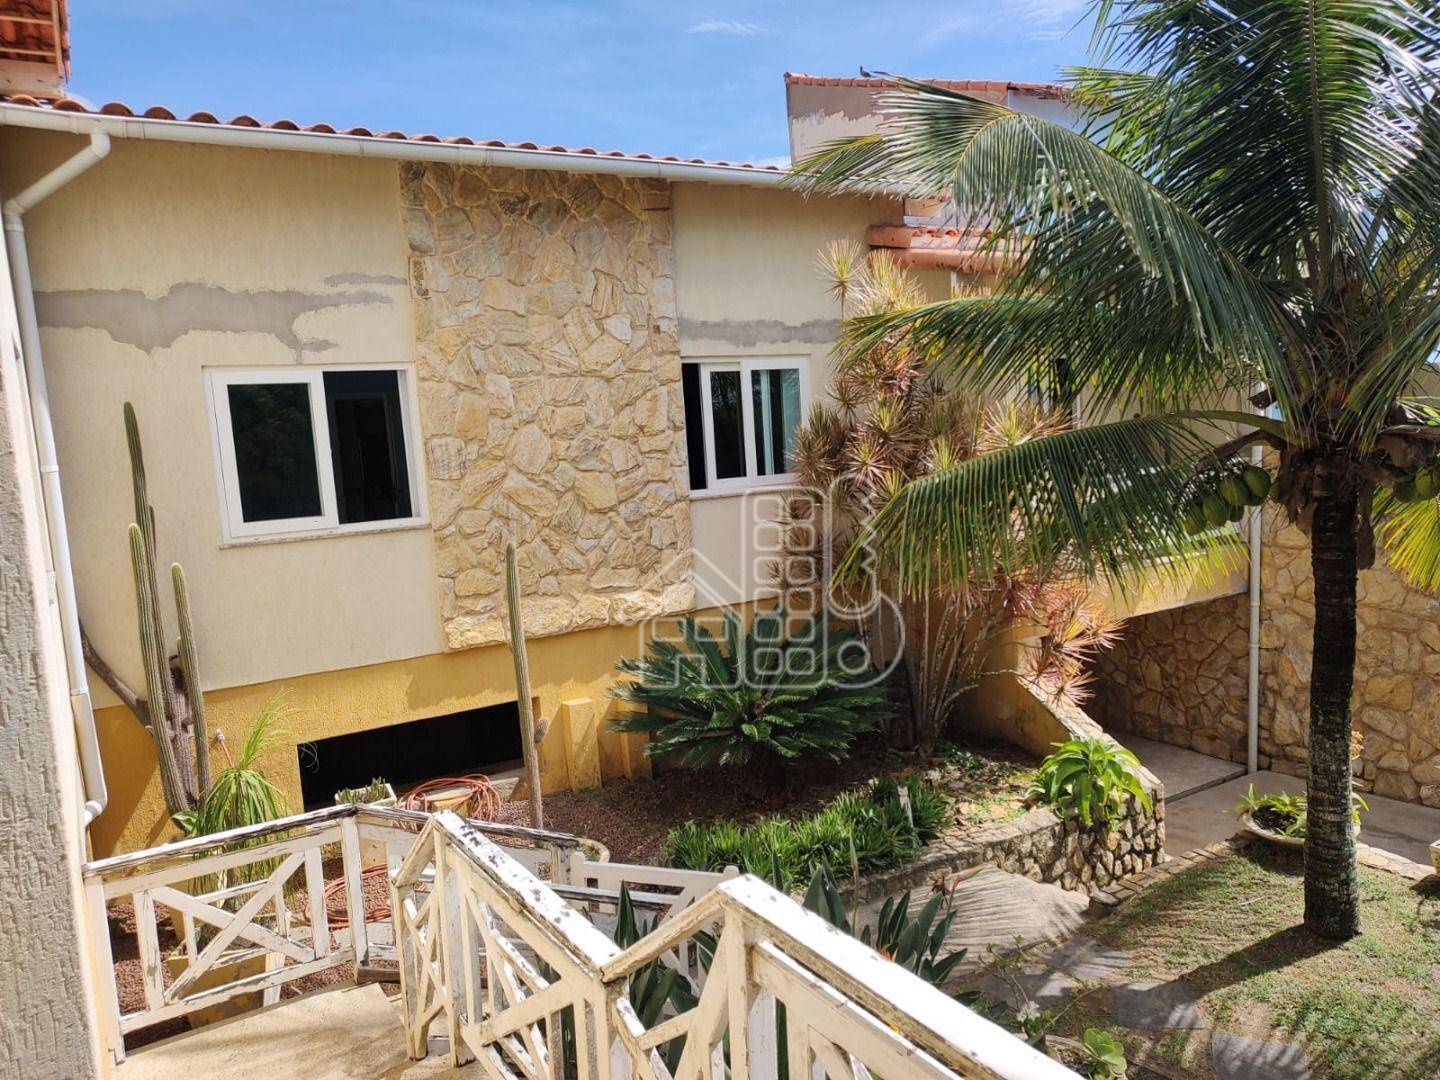 Casa à venda, 230 m² por R$ 900.000,00 - Guaratiba - Maricá/RJ